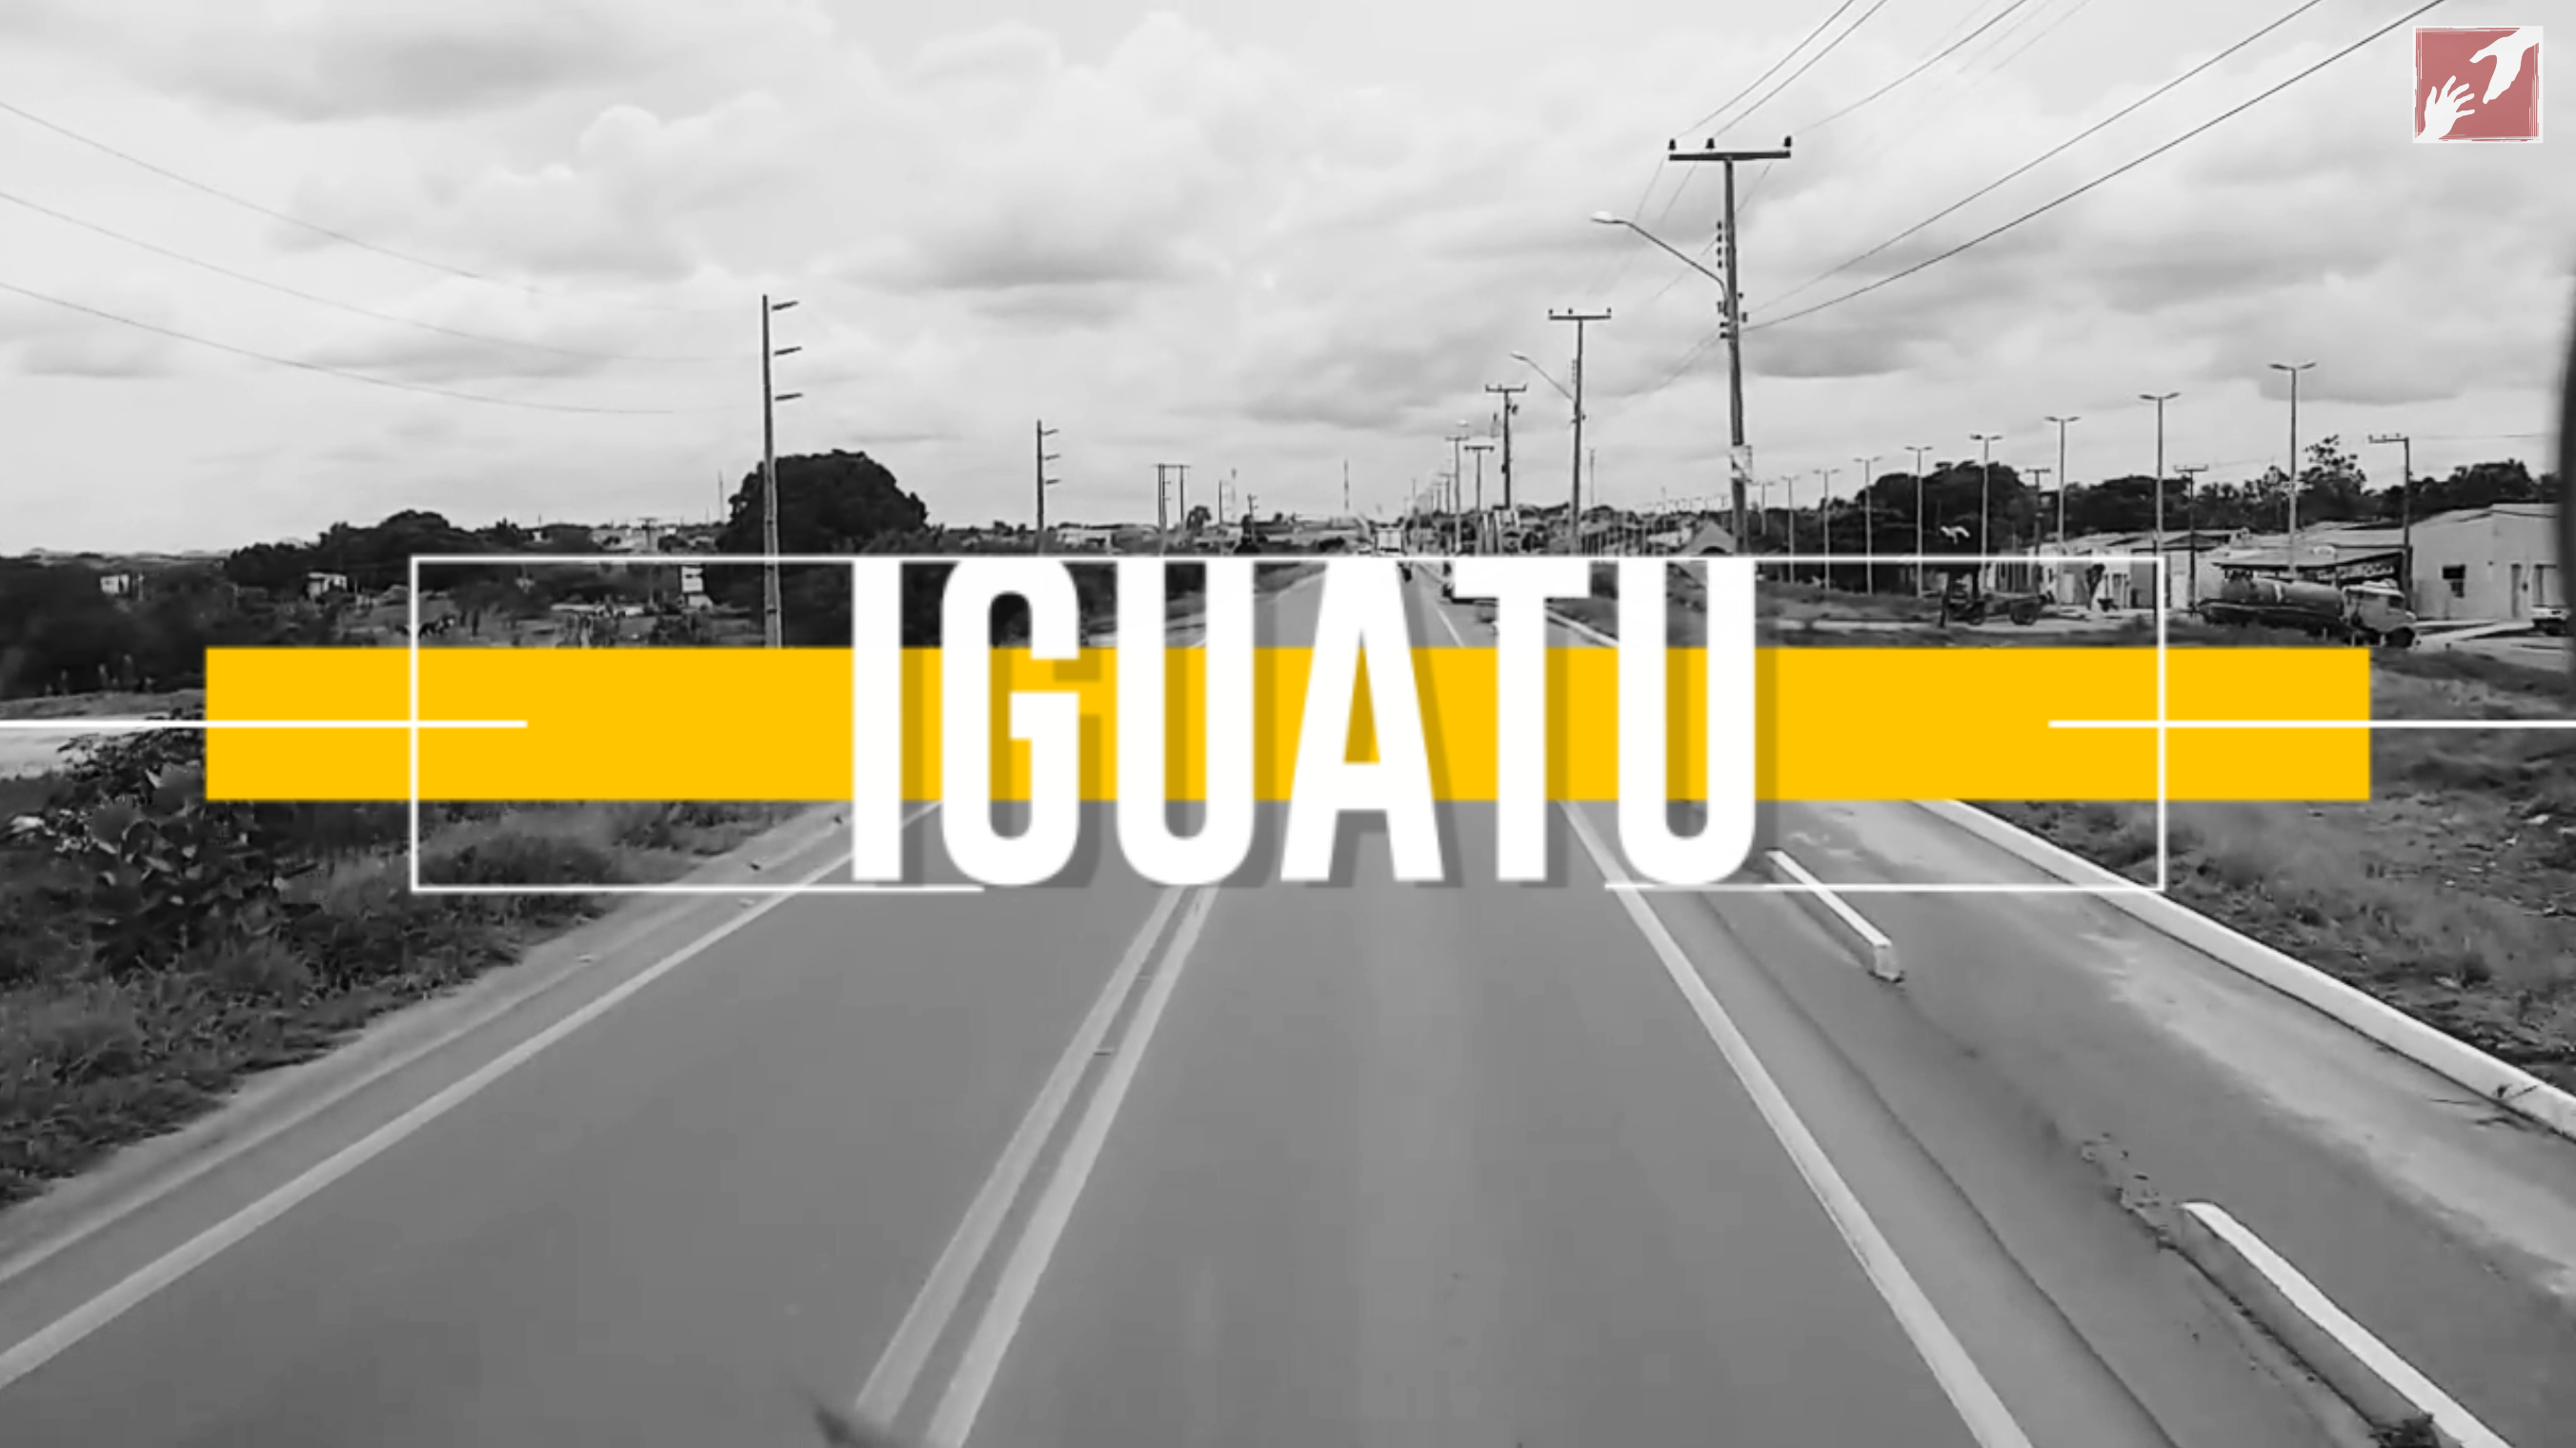 Iguatu Ceará